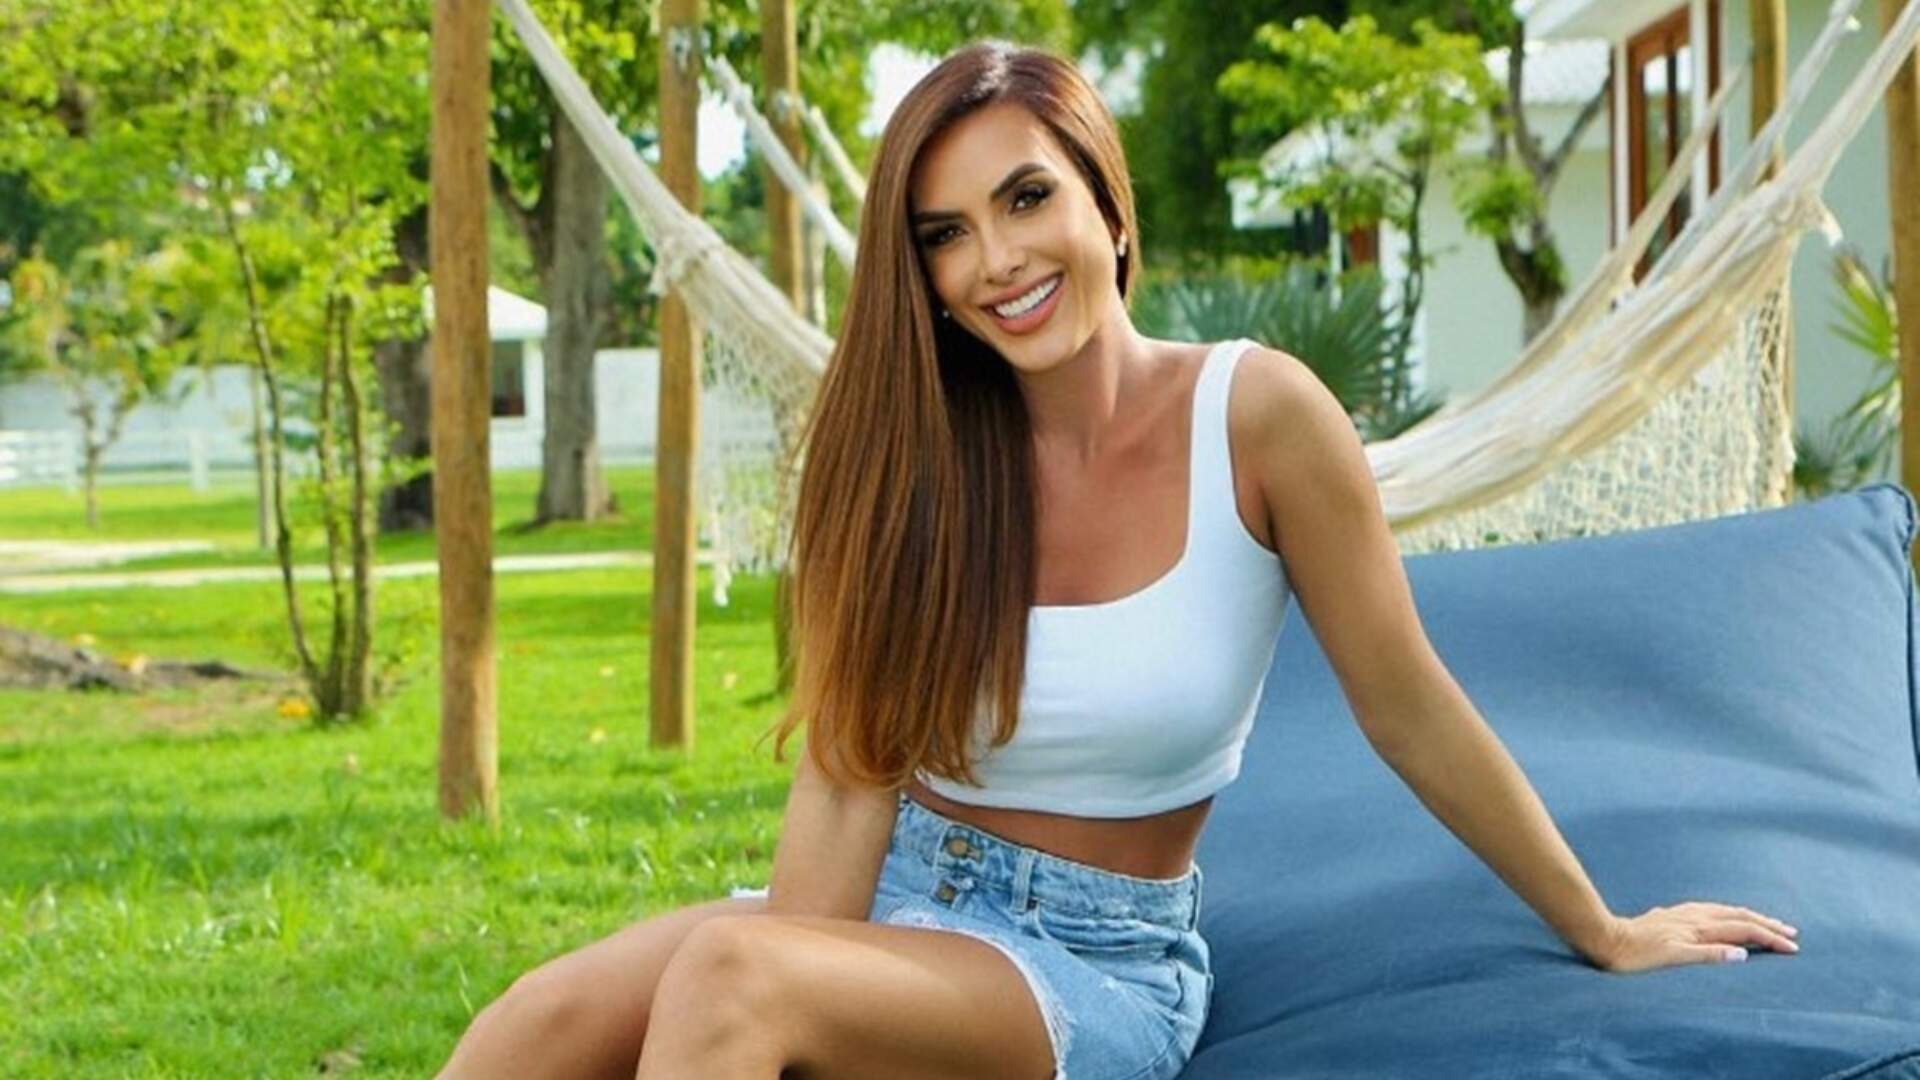 Ícone da internet, Nicole Bahls revela reinvenção na carreira e afirma vontade de seguir área inusitada - Metropolitana FM